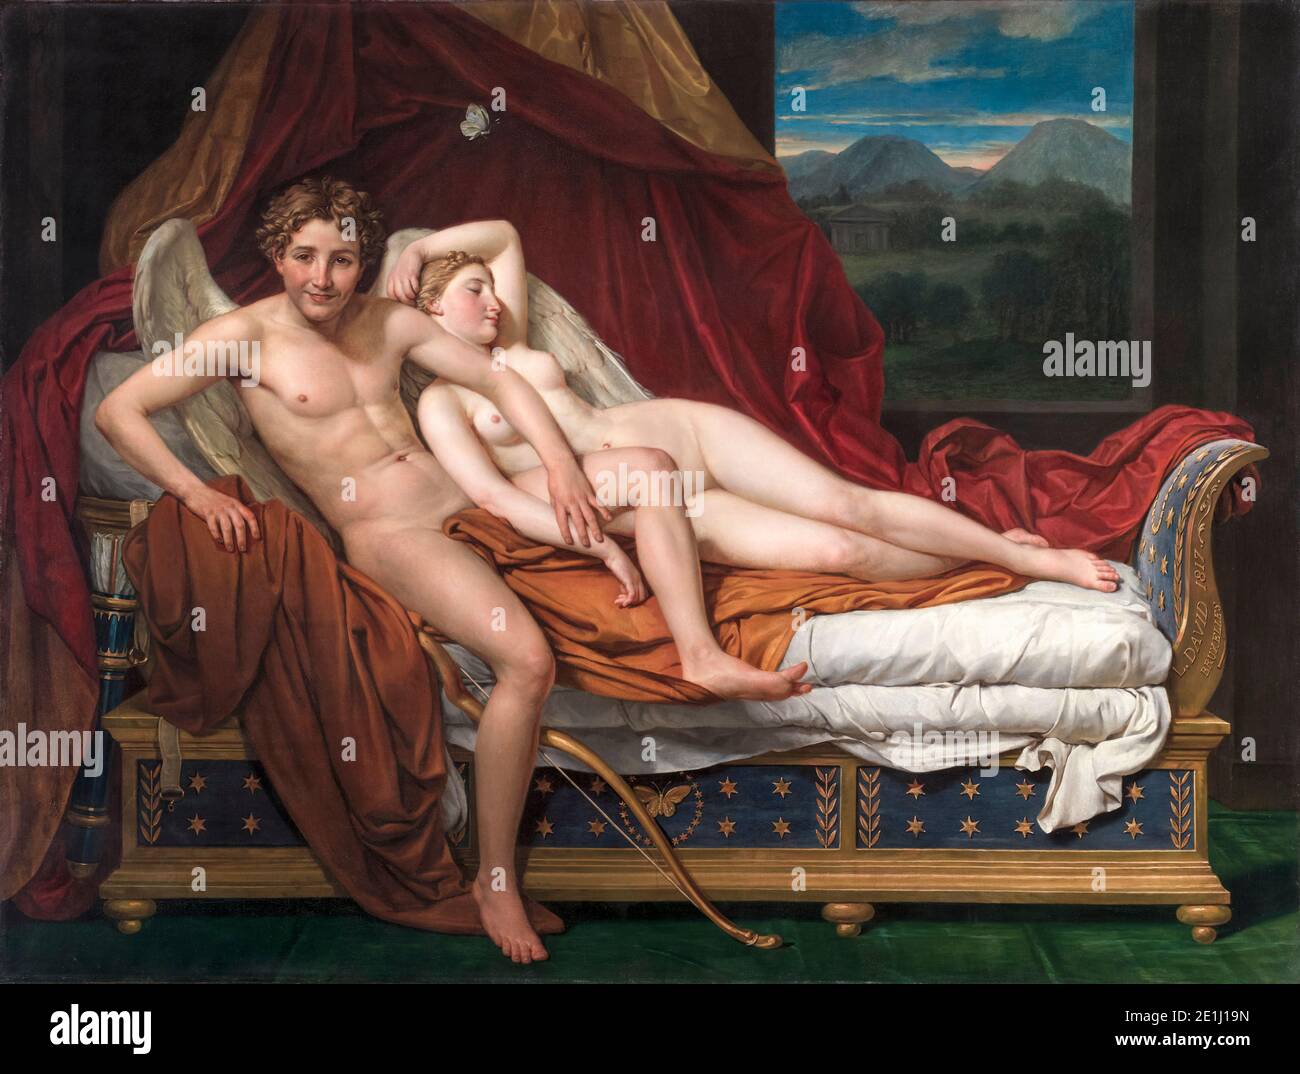 Amor und Psyche, neoklassische Malerei von Jacques-Louis David, 1817 Stockfoto